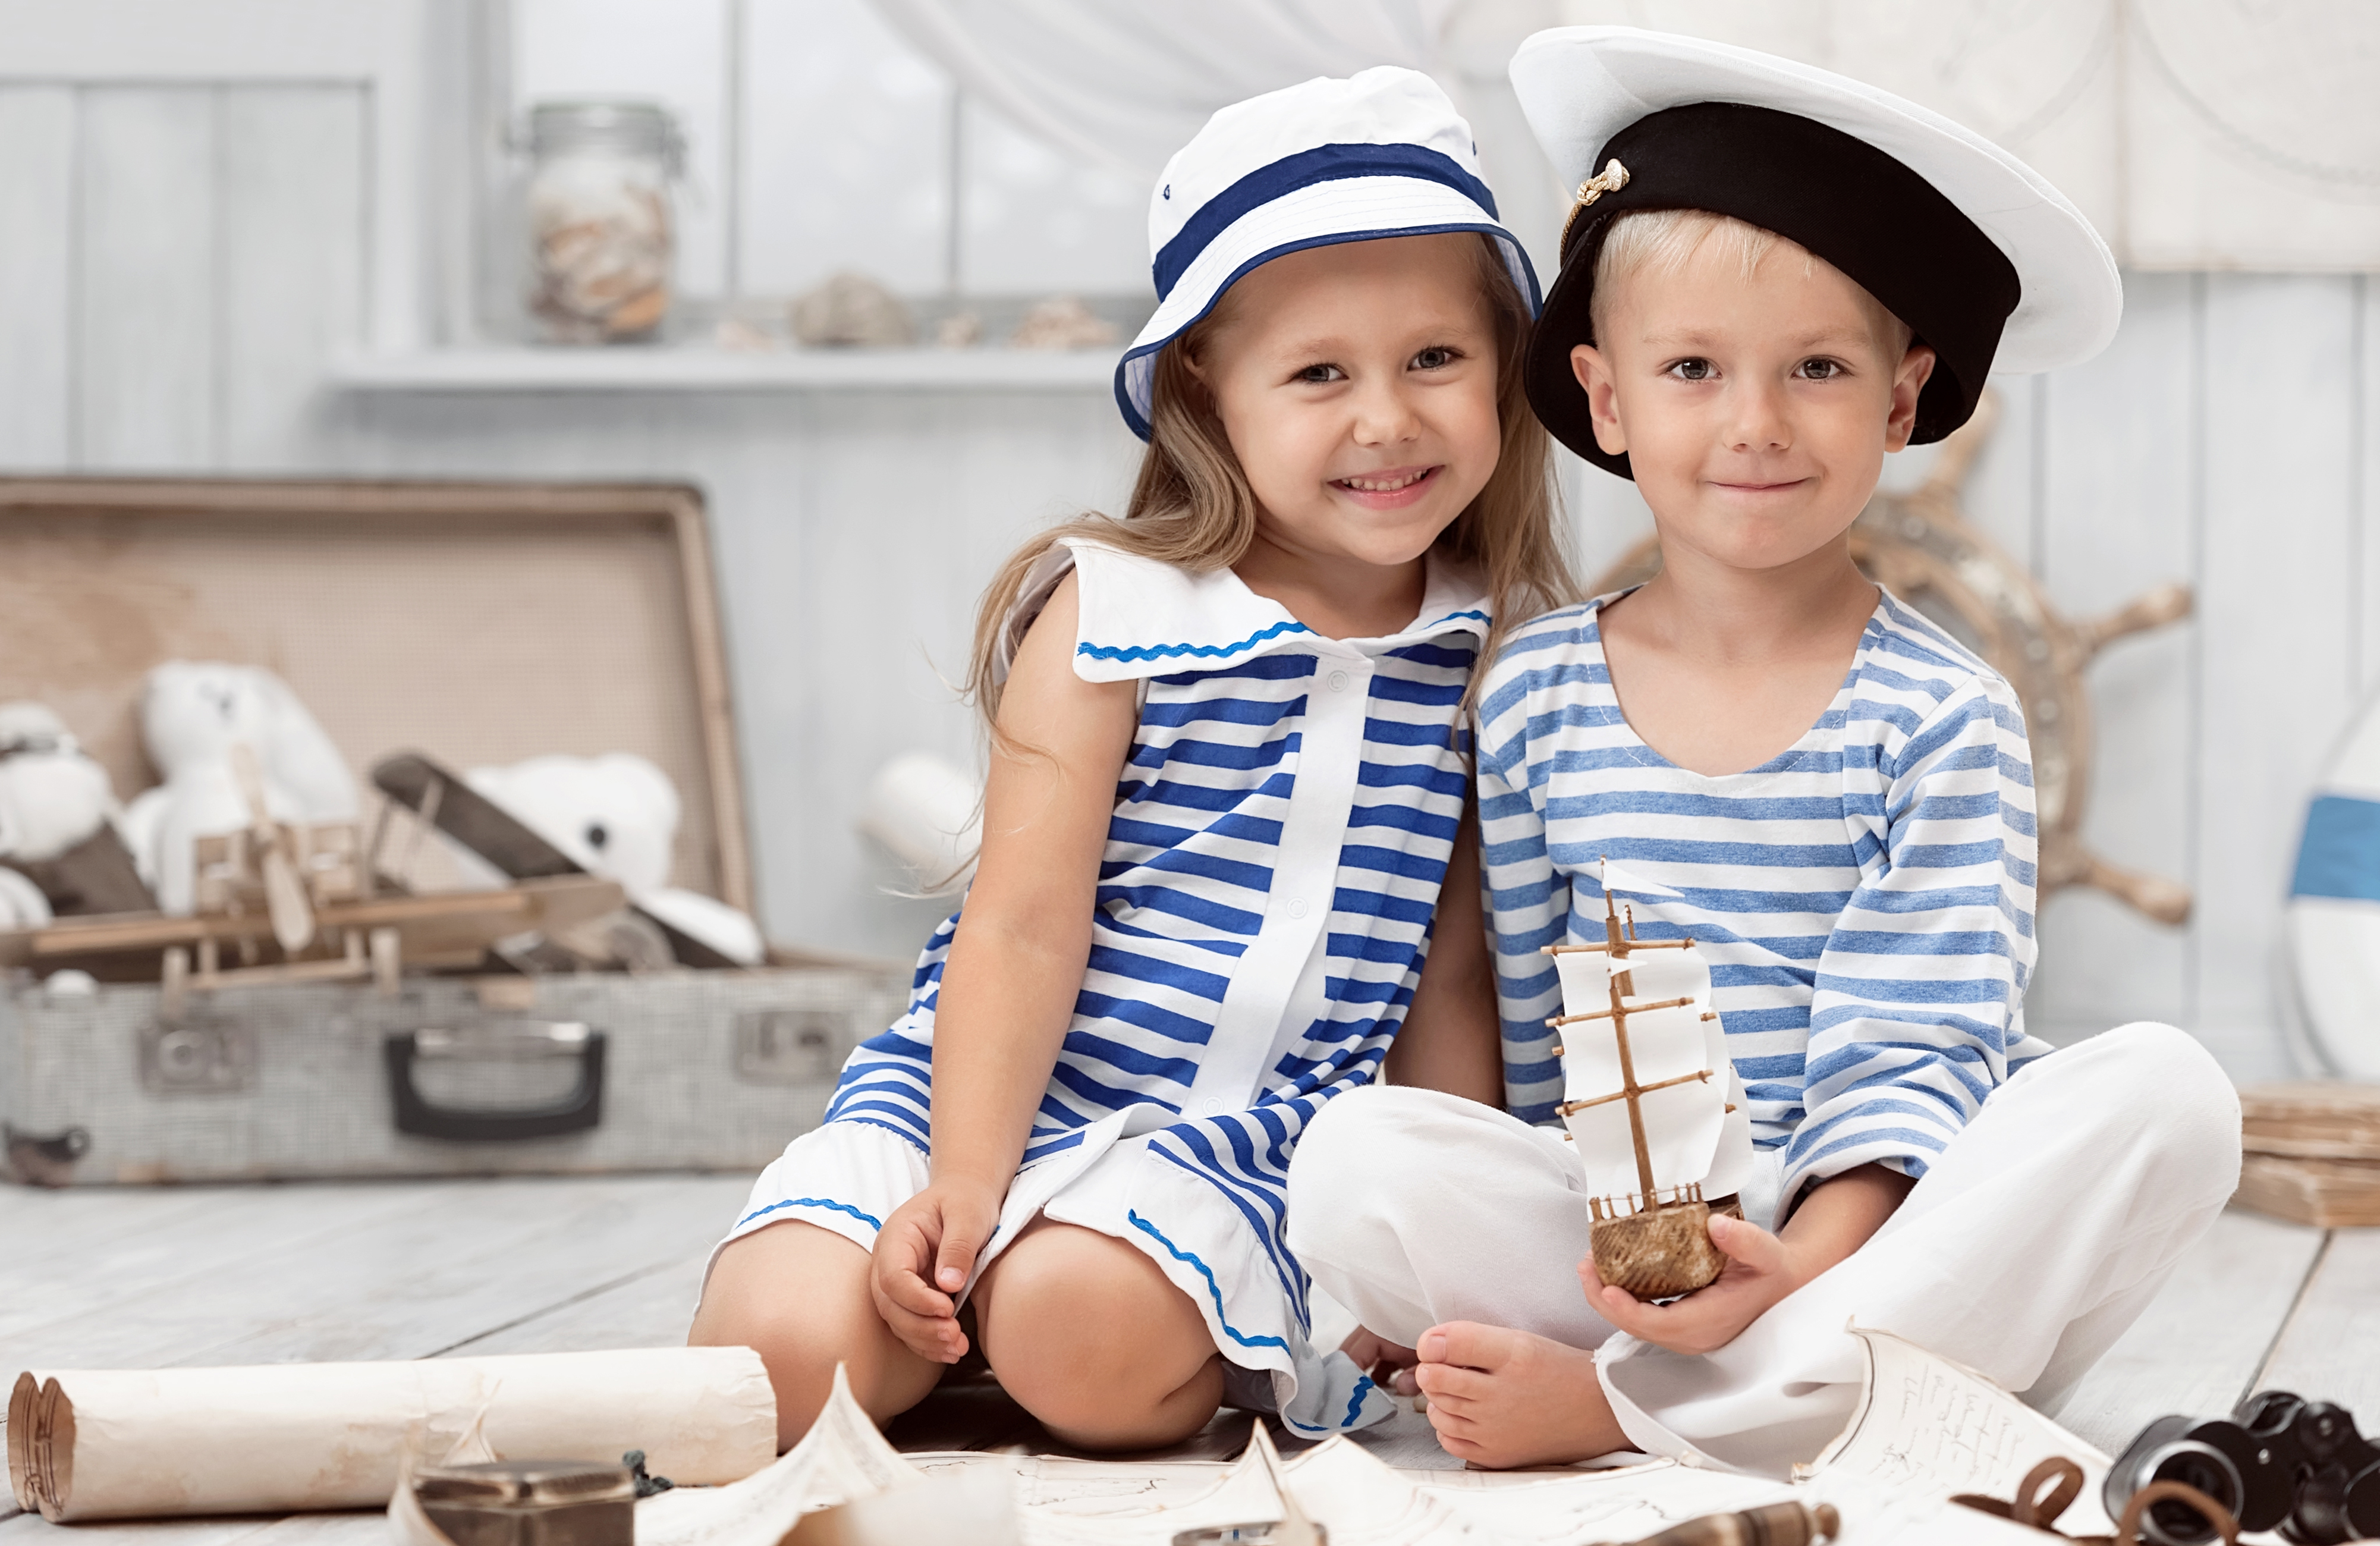 Boy end girls. Морской стиль в одежде. Морской стиль в одежде для детей. Фотосессия в морском стиле для детей.